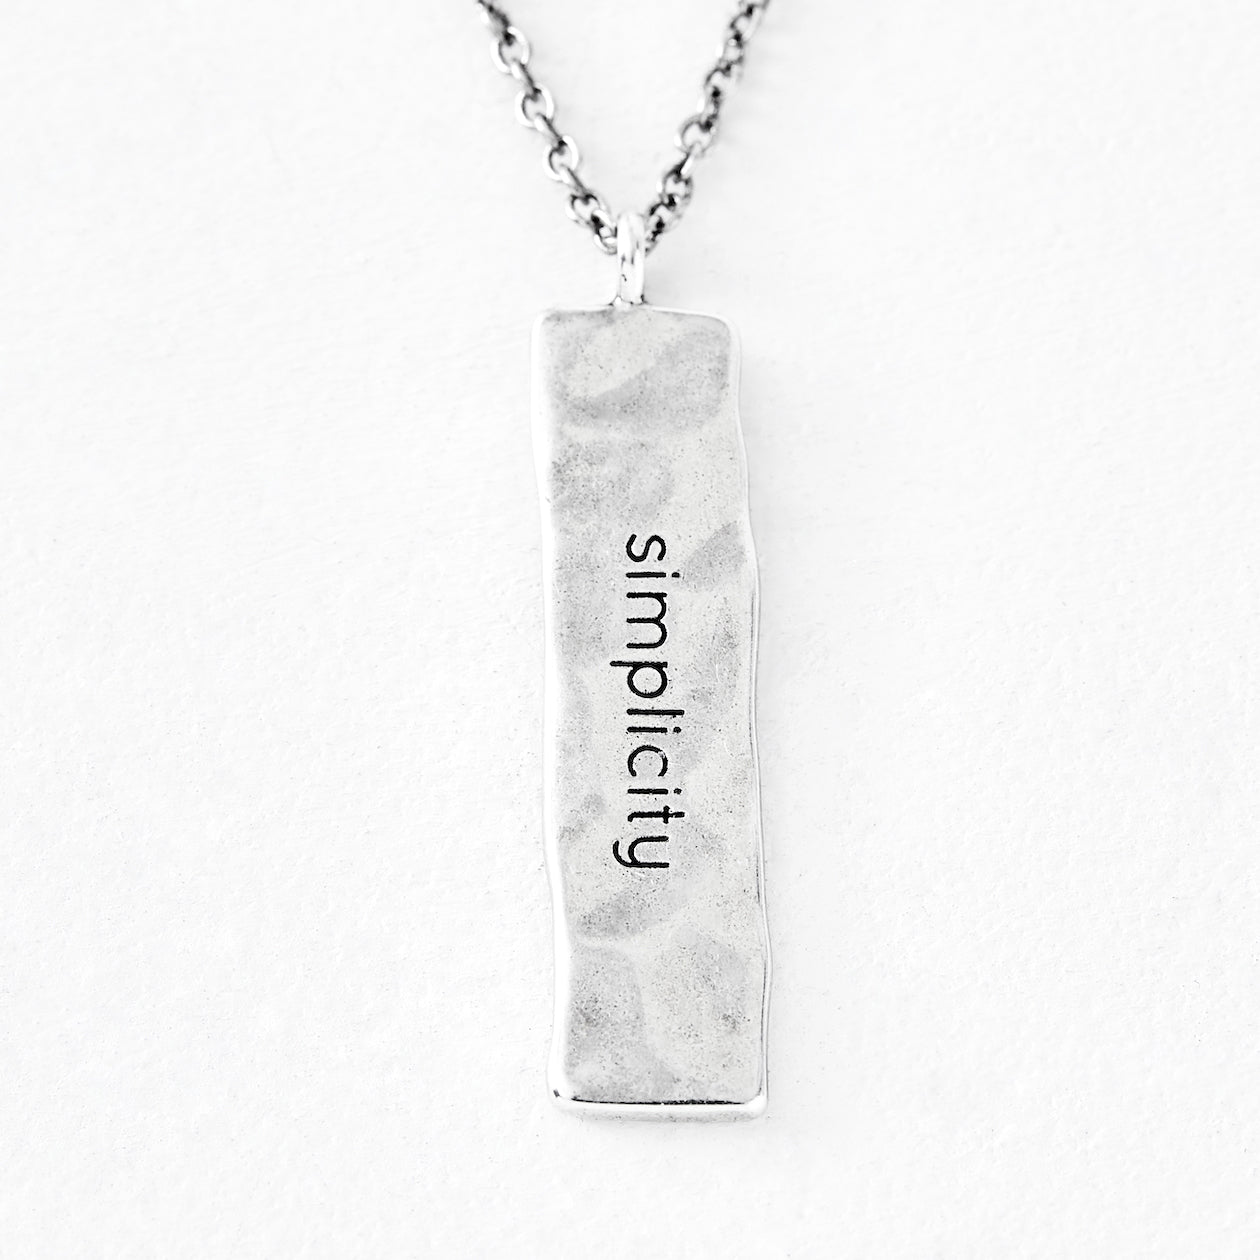 Luv AJ "simplicity" Silver Necklace Pendant